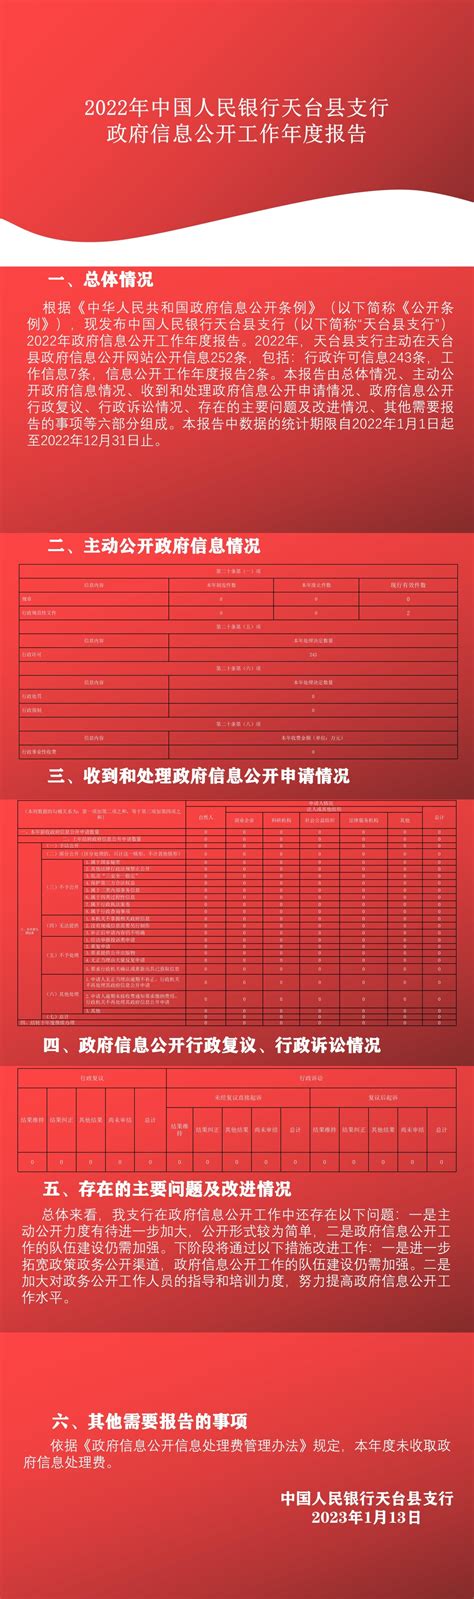 【图解】2022年中国人民银行天台县支行政府信息公开工作年度报告